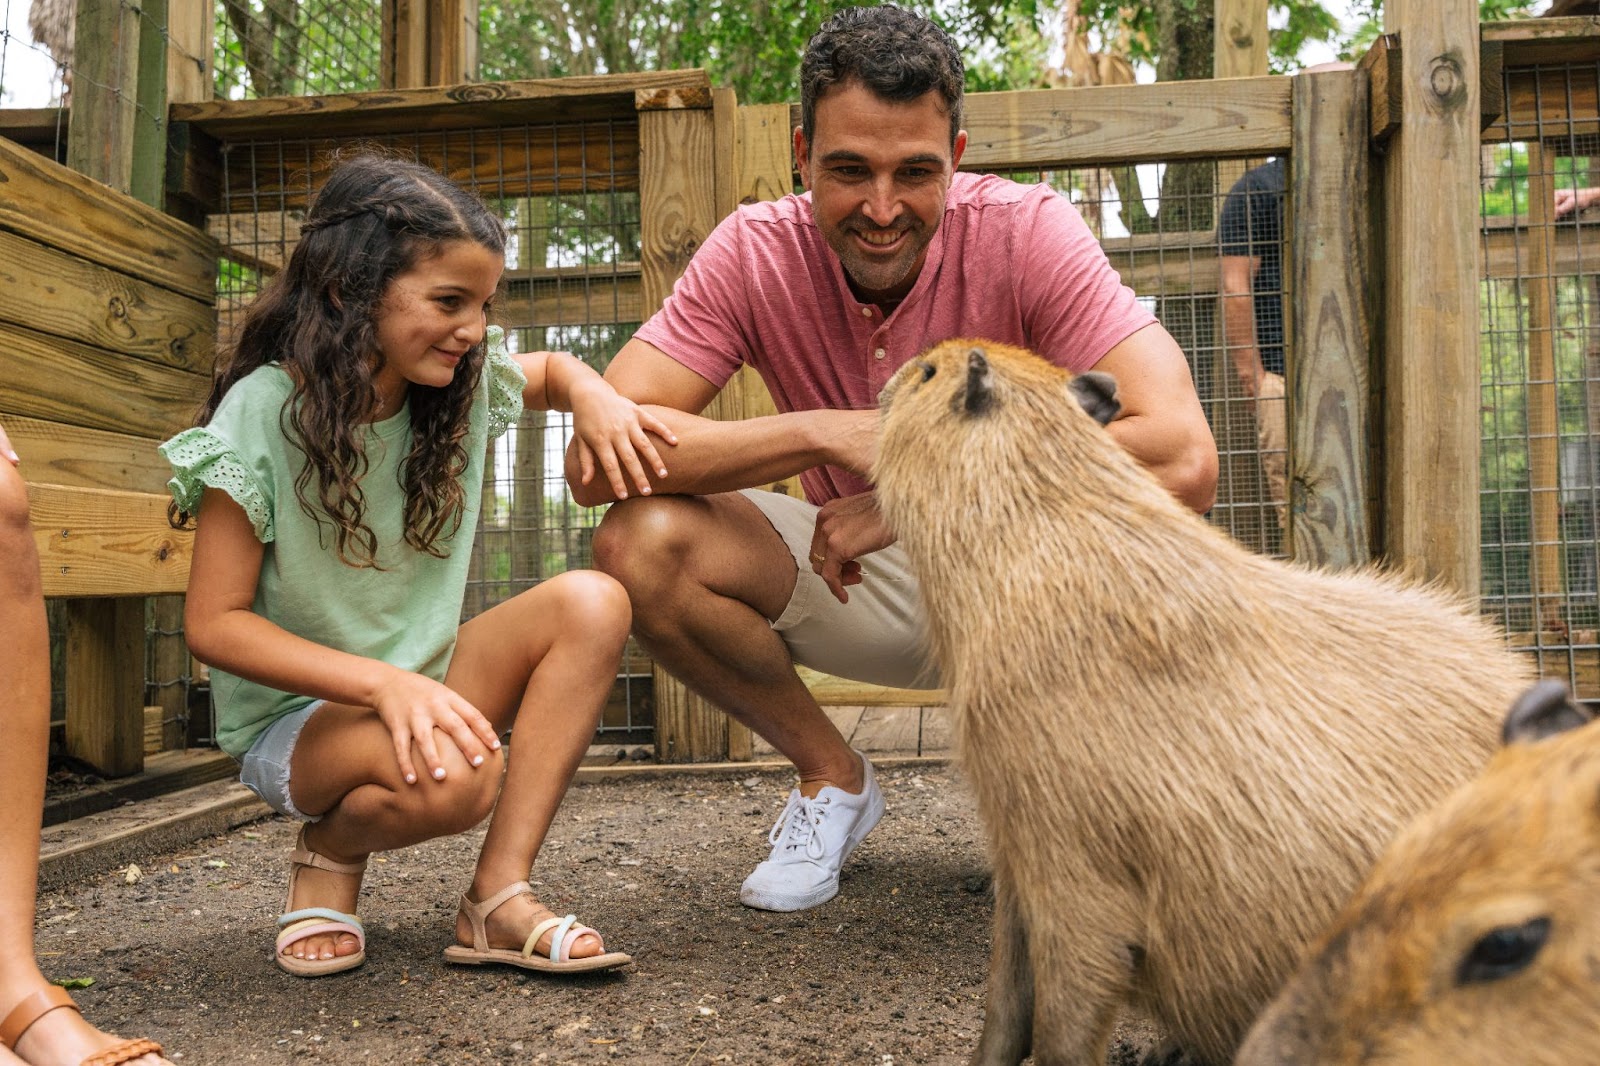 A family enjoys a capybara encounter at the Wild Florida's Gator Park